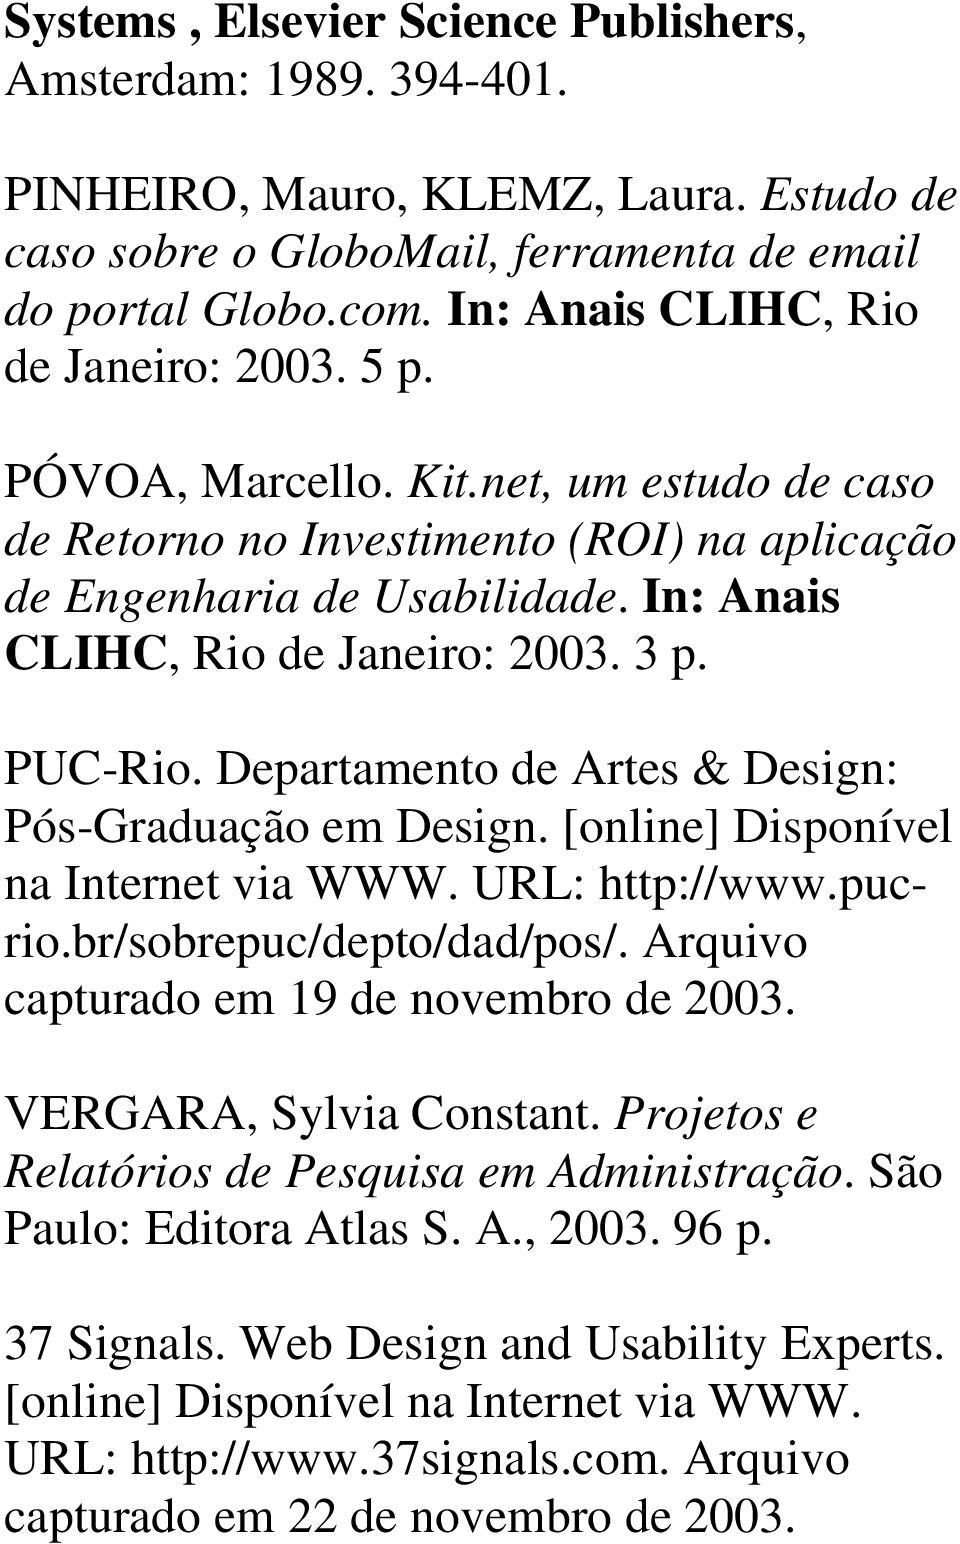 In: Anais CLIHC, Rio de Janeiro: 2003. 3 p. PUC-Rio. Departamento de Artes & Design: Pós-Graduação em Design. [online] Disponível na Internet via WWW. URL: http://www.pucrio.